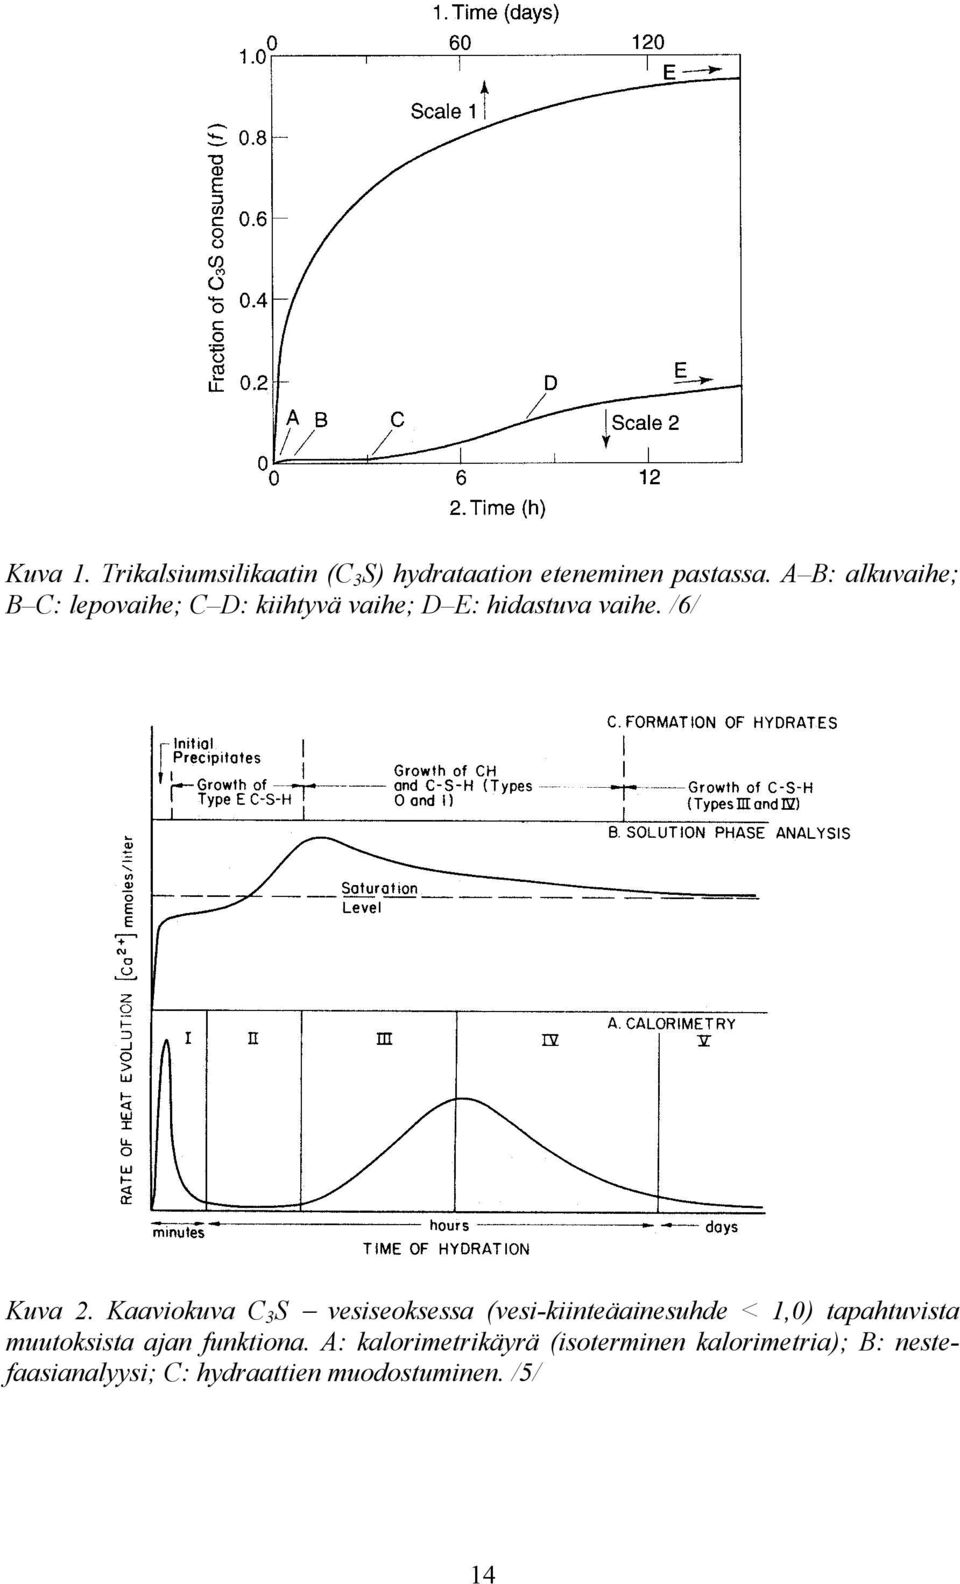 Kaaviokuva C 3 S vesiseoksessa (vesi-kiinteäainesuhde < 1,0) tapahtuvista muutoksista ajan